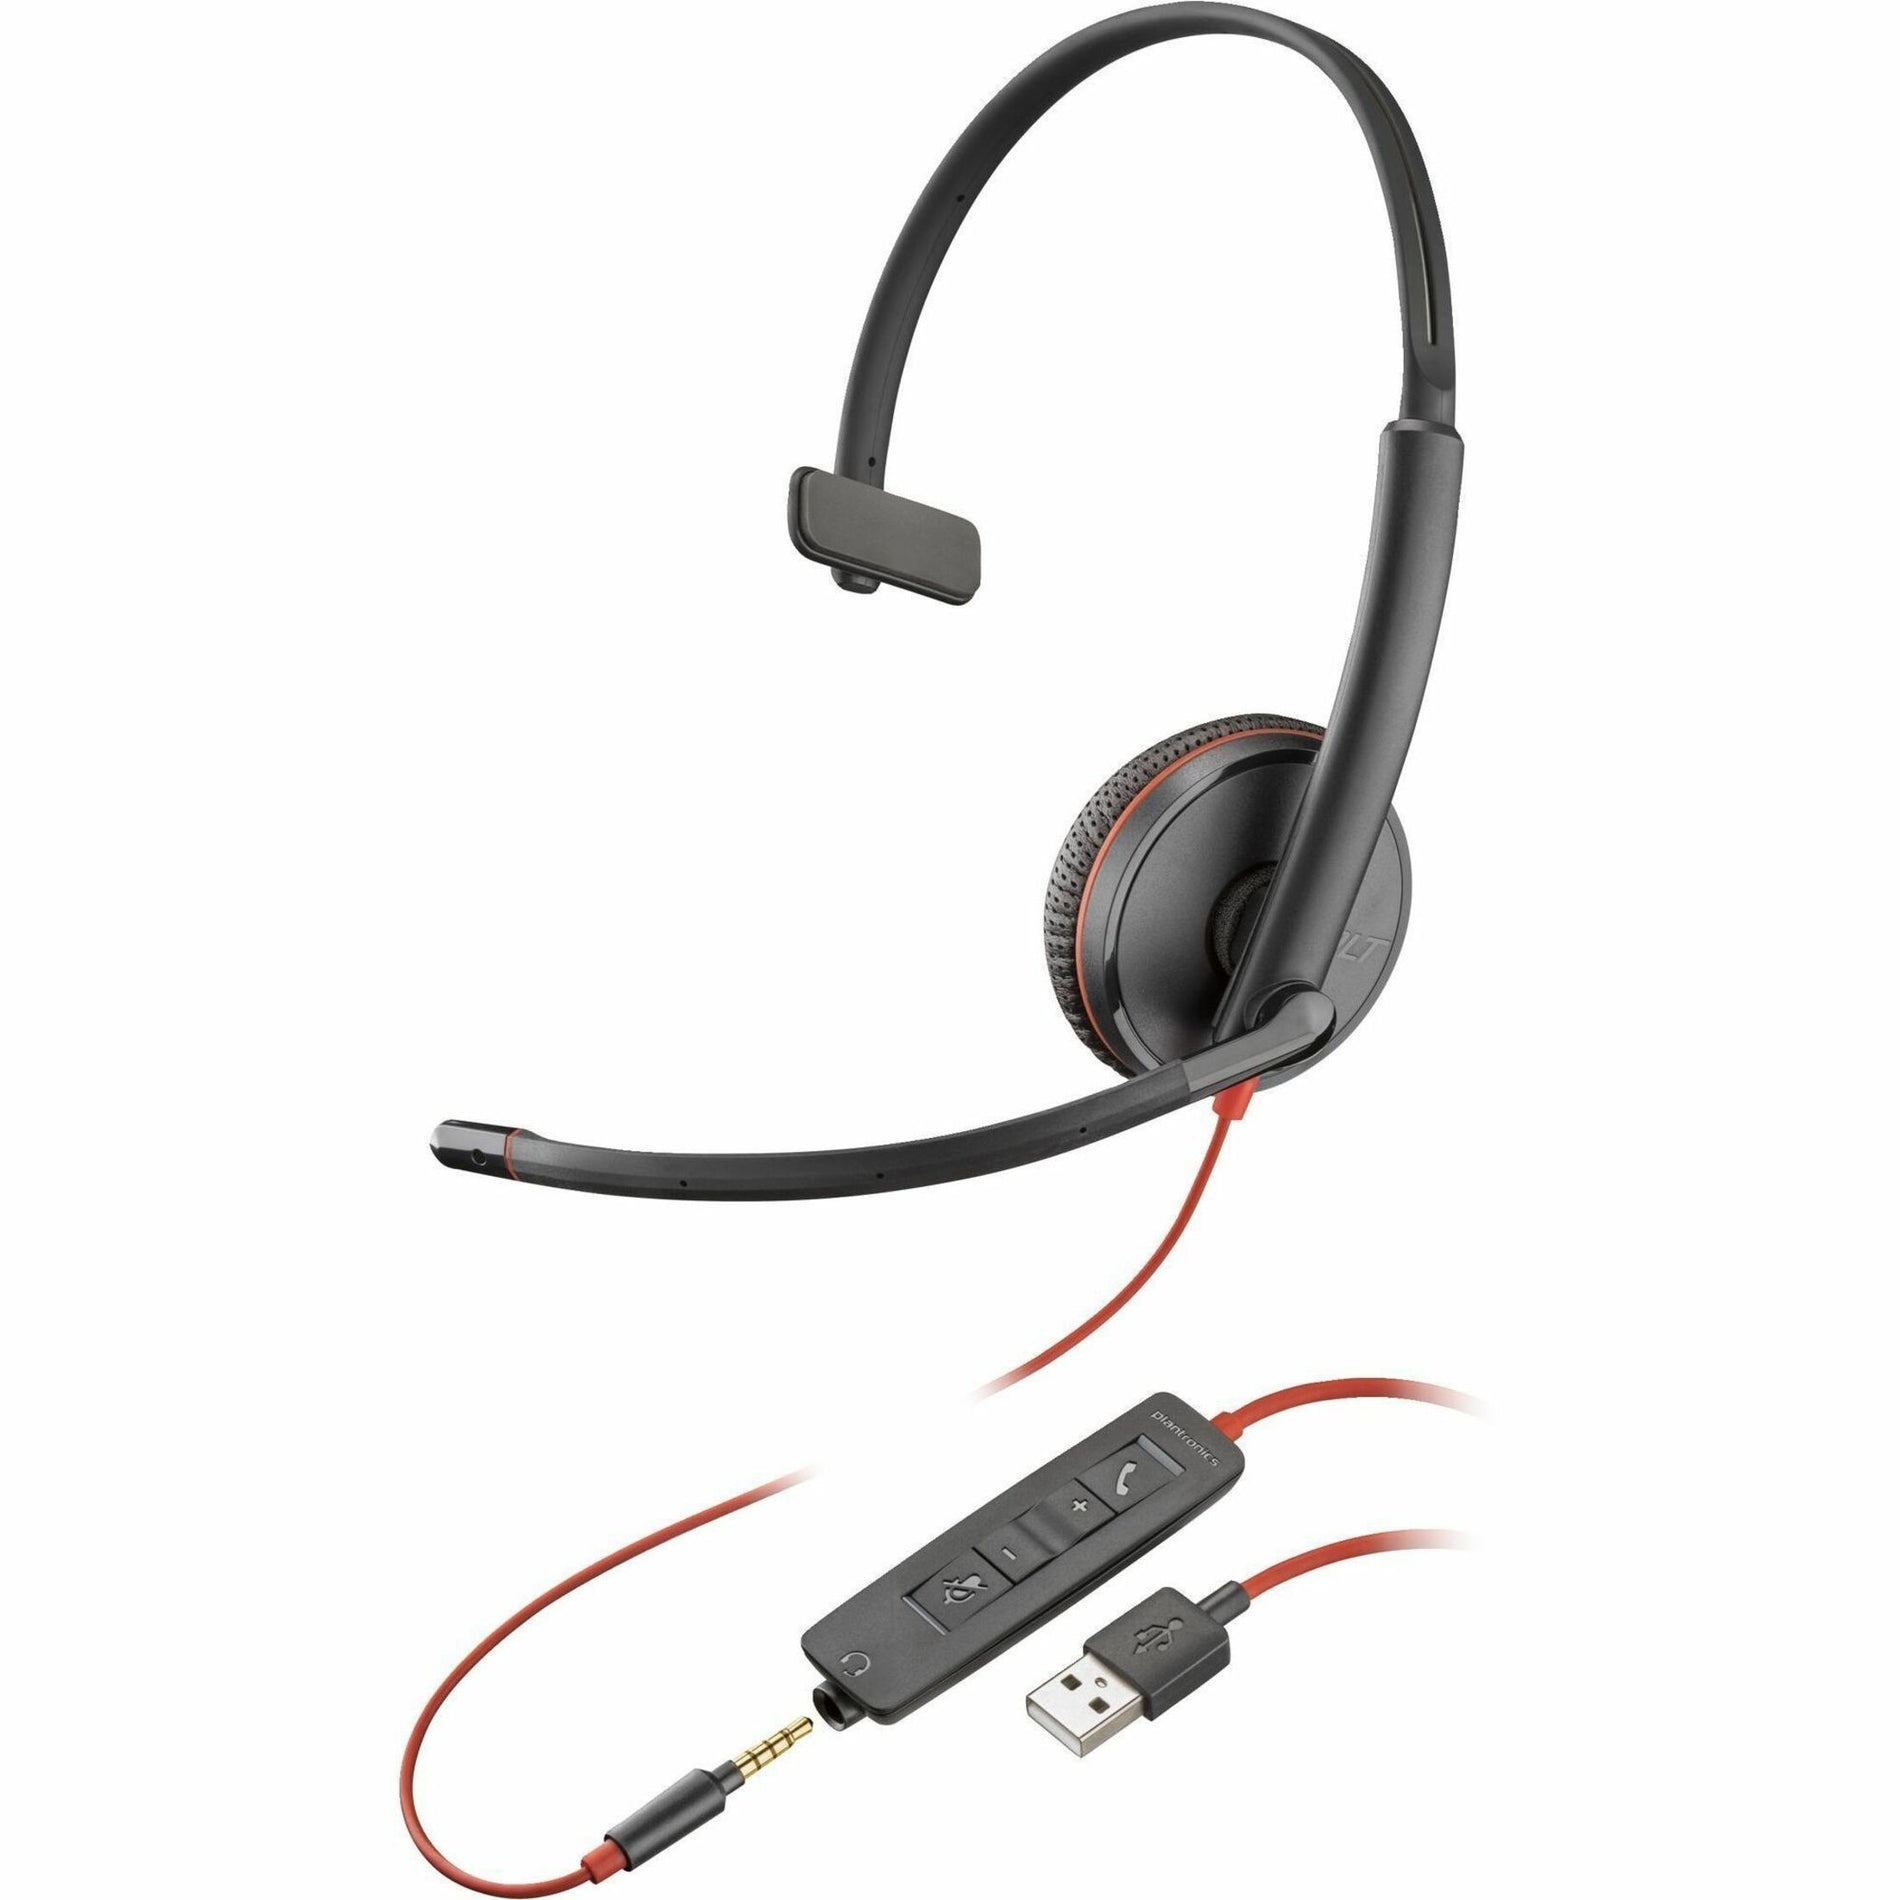 品牌: Poly 型号: 80S06AA 颜色: 黑色 类型: 头戴式 耳挂式 降噪功能 轻巧 耐用 宽带音频